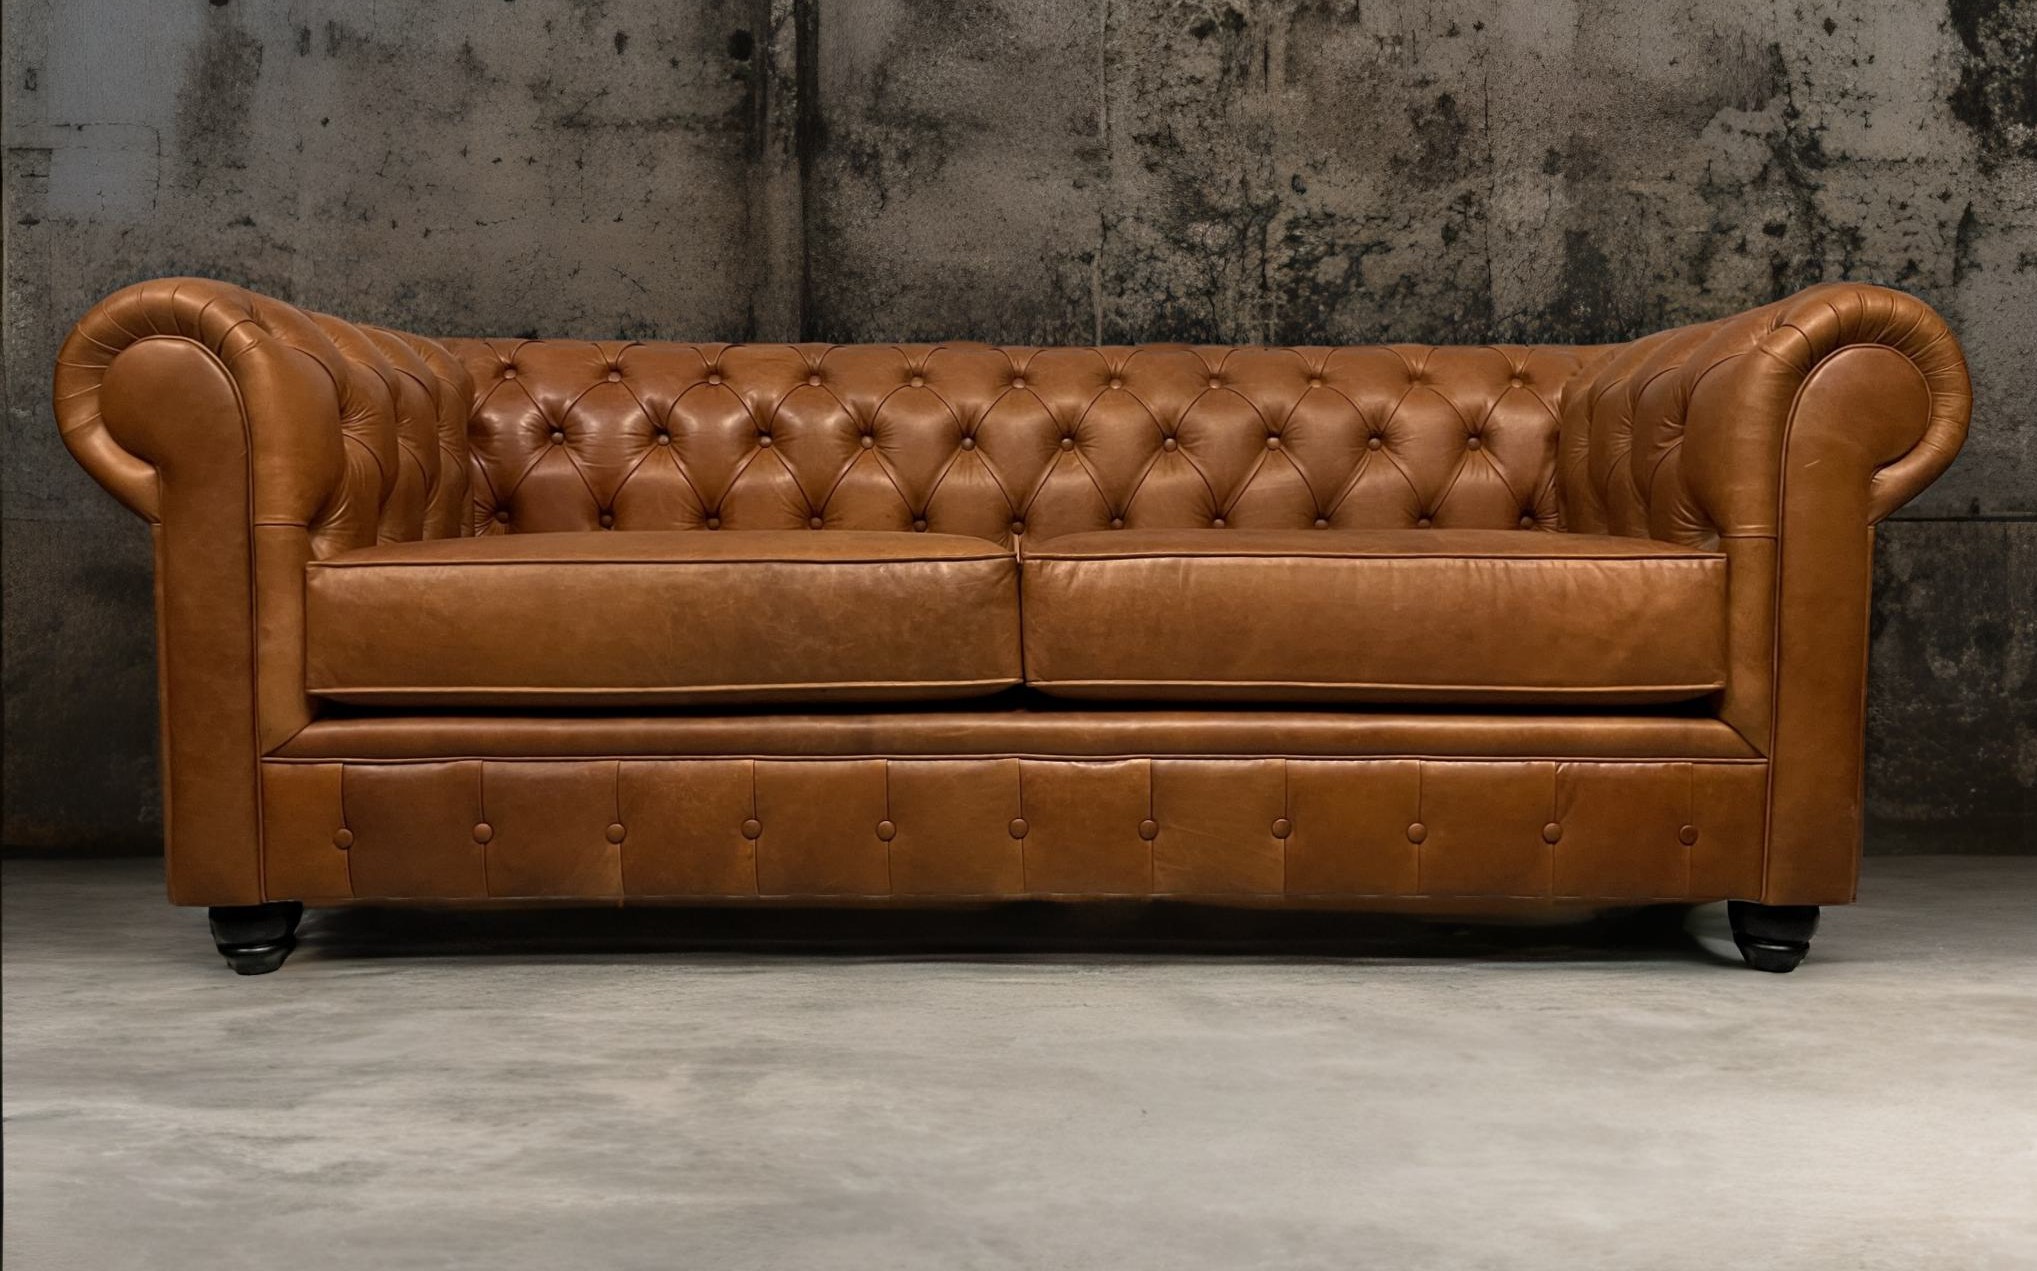 Sofa de Cuero – Chesterfield Color Rustic Terra, Cojines Lisos, respaldo Recto Clásico, Cuero 100% Natural Uruguayo